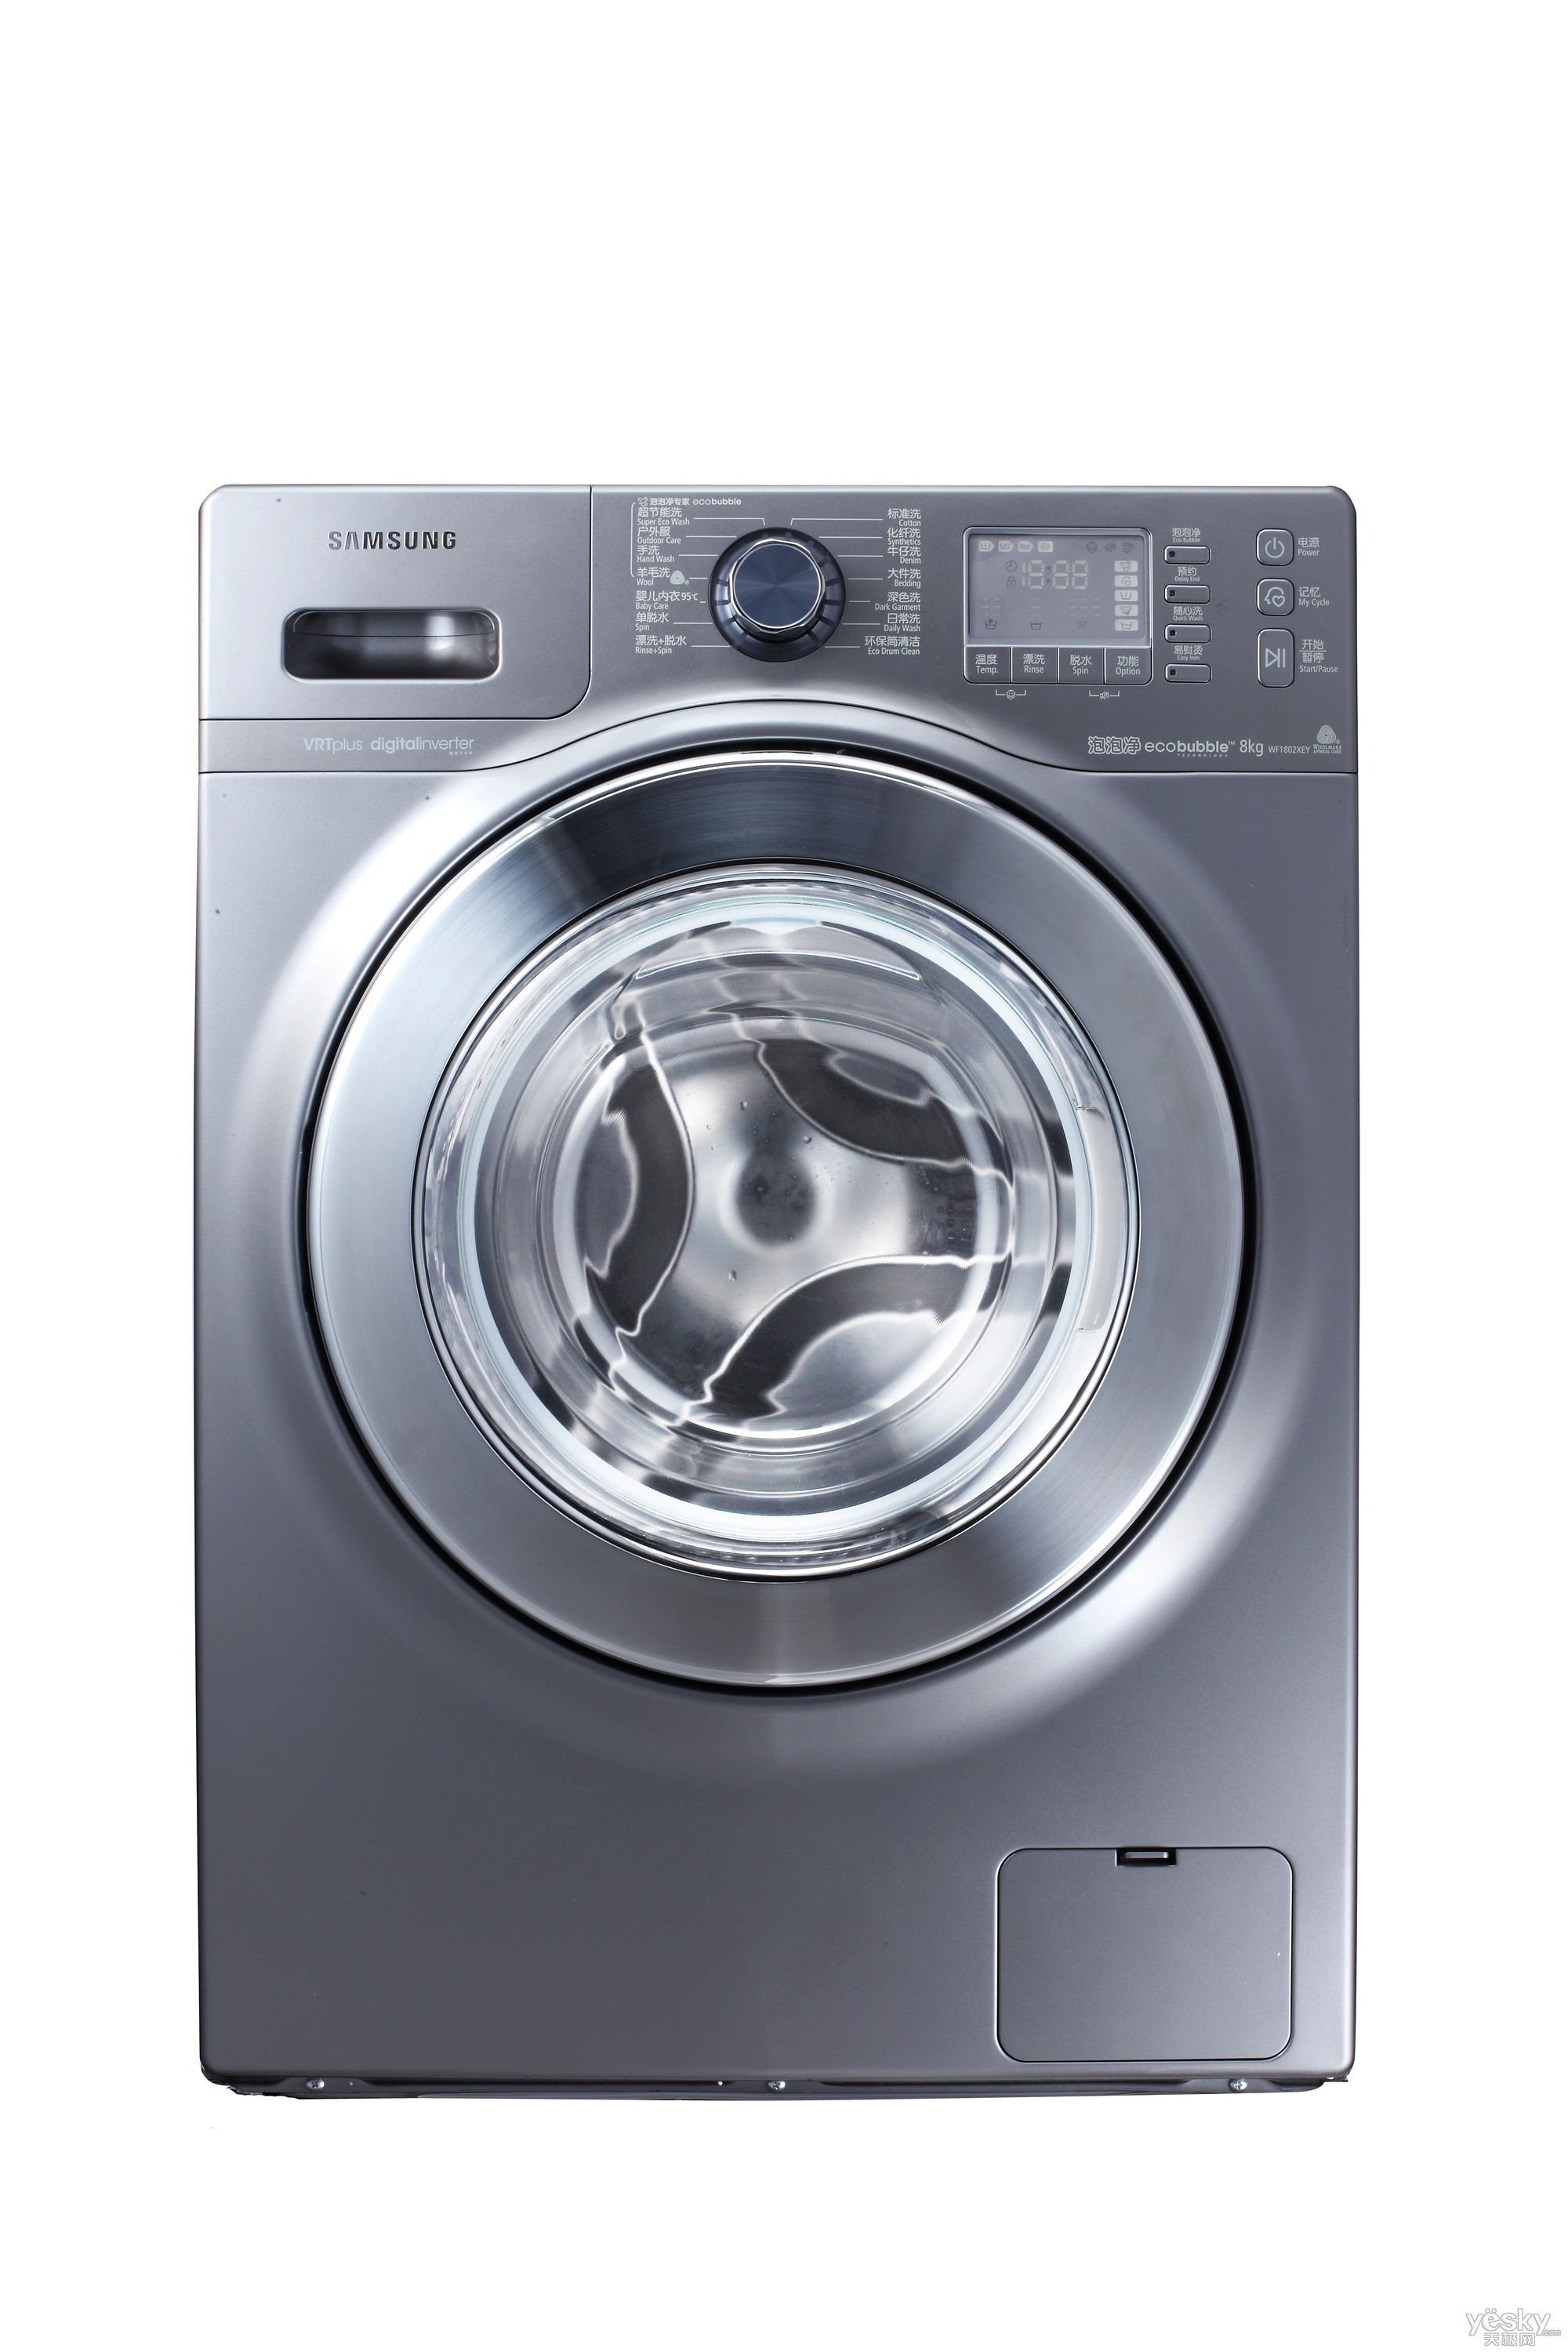 天极网 家电 洗衣机方面,三星则力推泡泡净技术,全线泡泡净系列洗衣